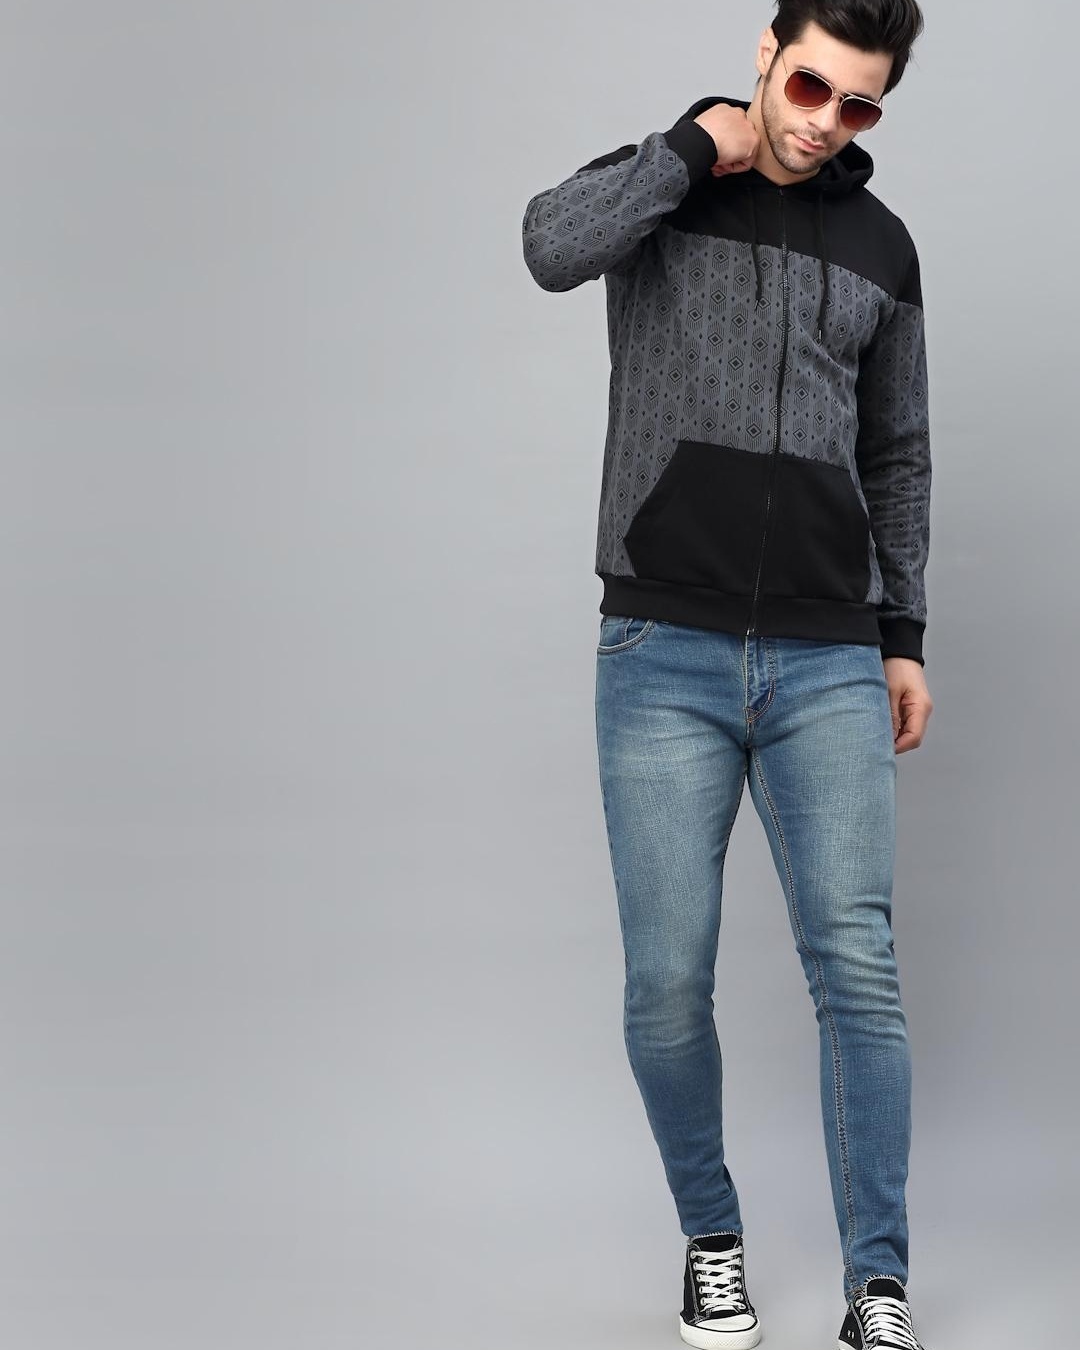 Shop Men's Grey and Black Color Block Slim Fit Hooded Jacket